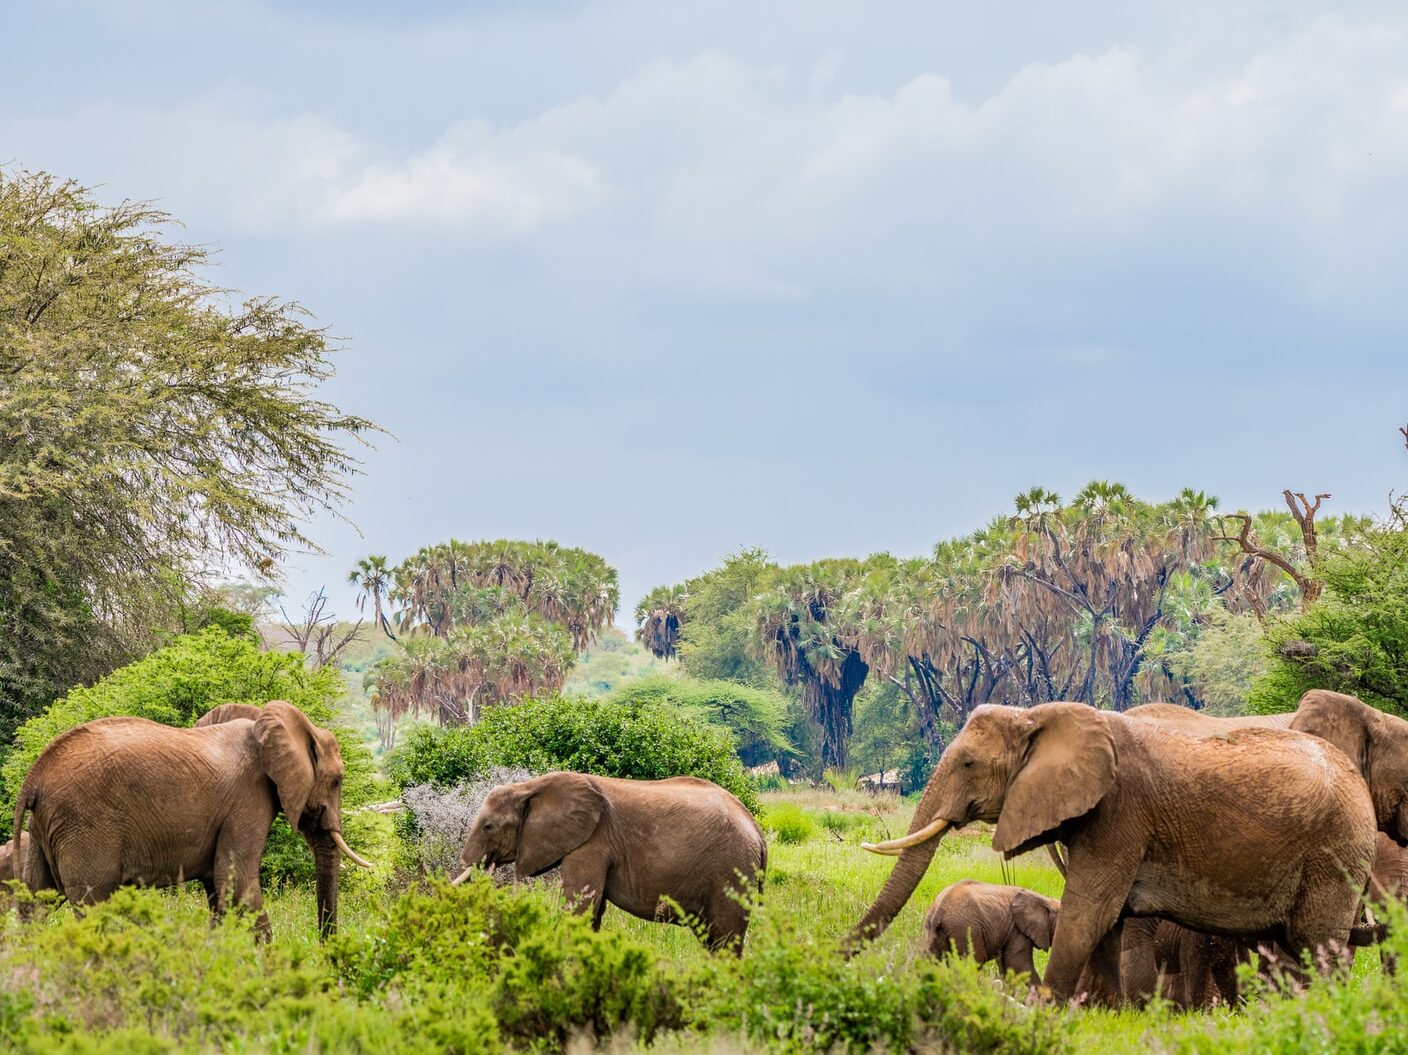 herd of elephants near trees